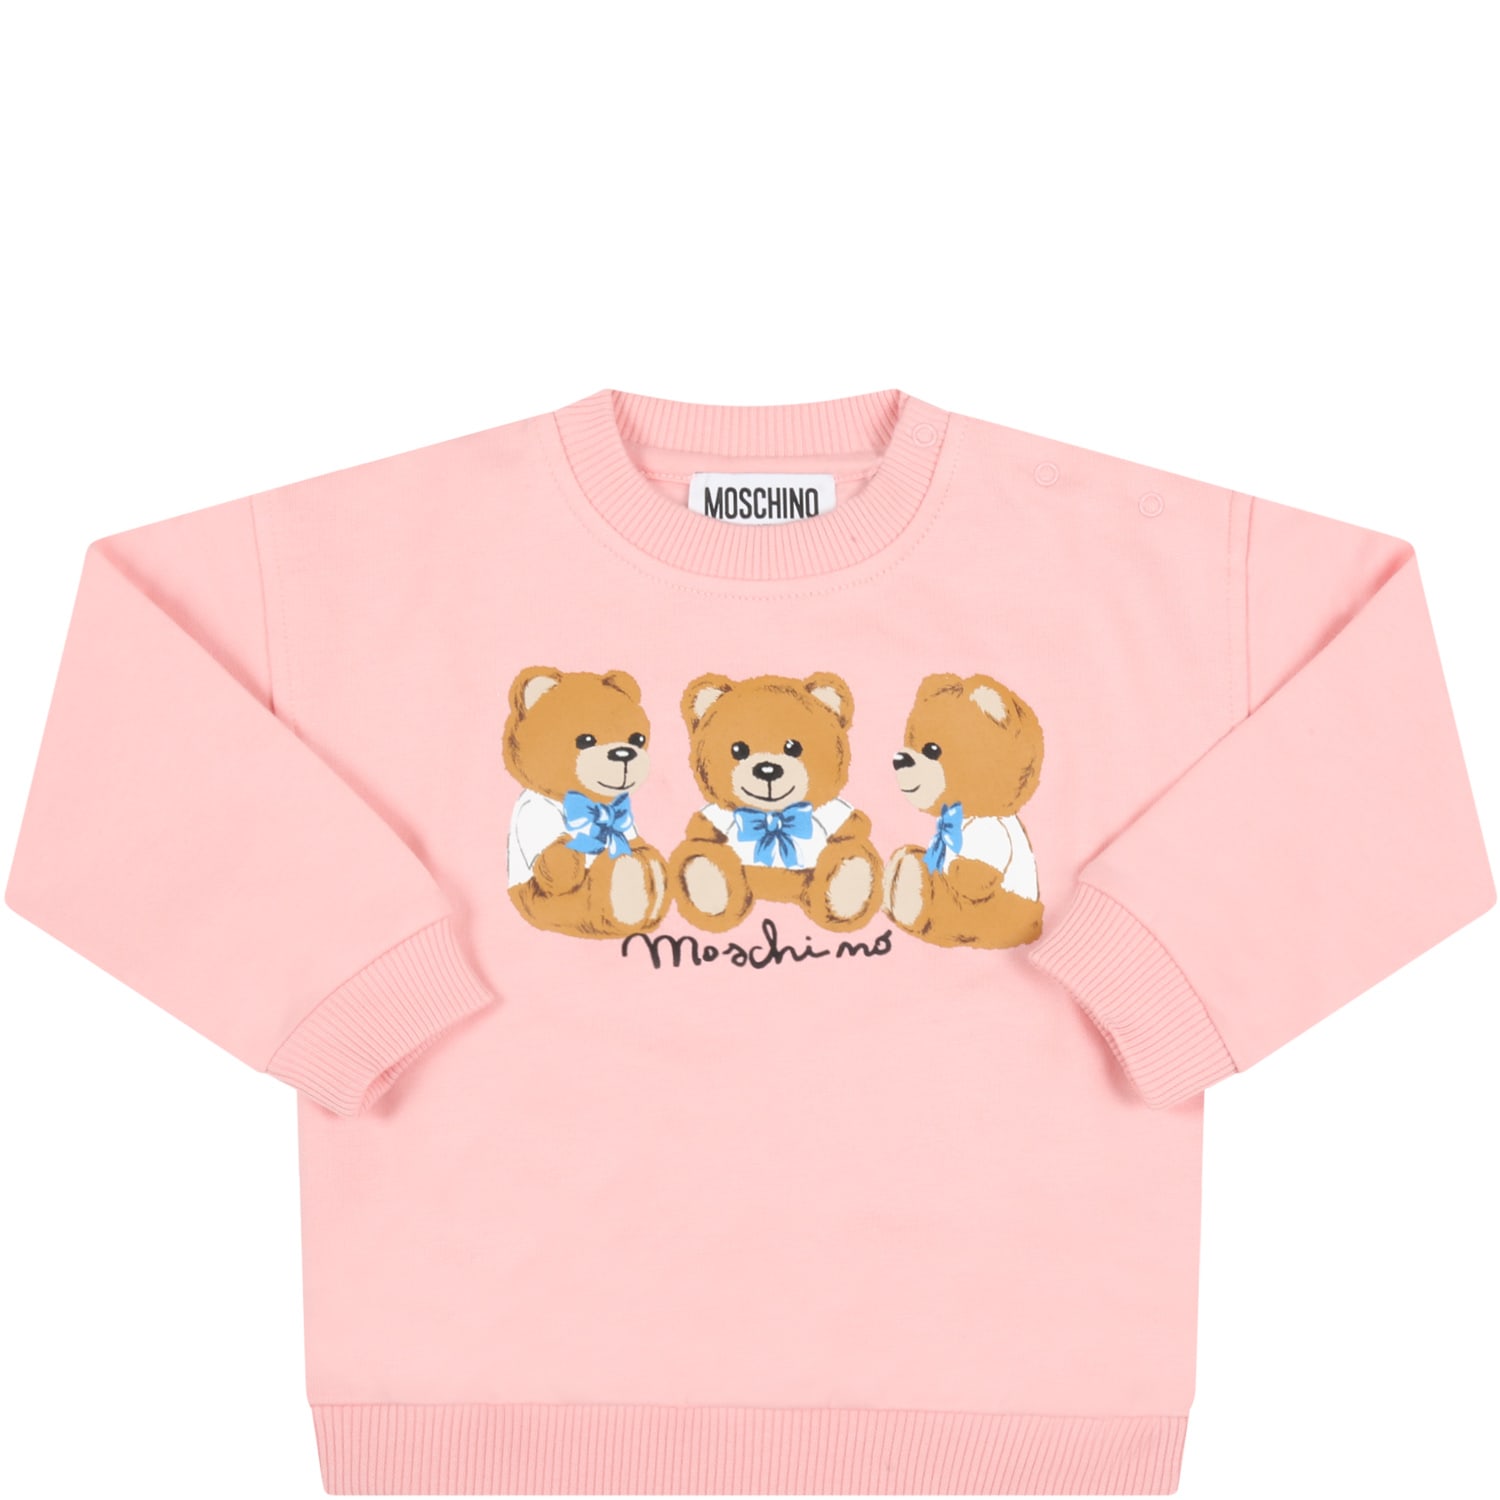 Moschino Pink Sweatshirt For Baby Girl With Teddy Bears